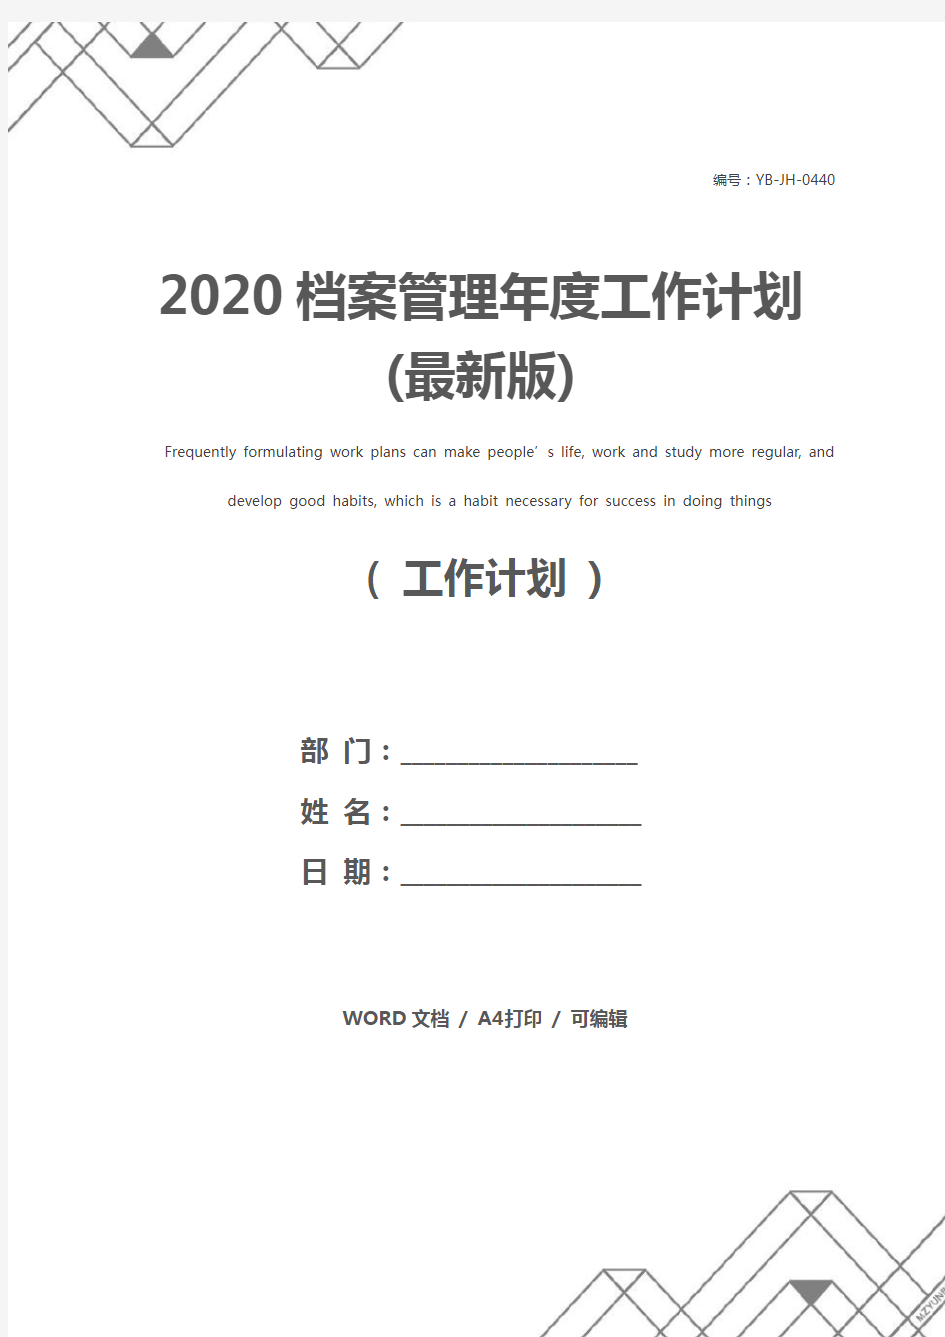 2020档案管理年度工作计划(最新版)